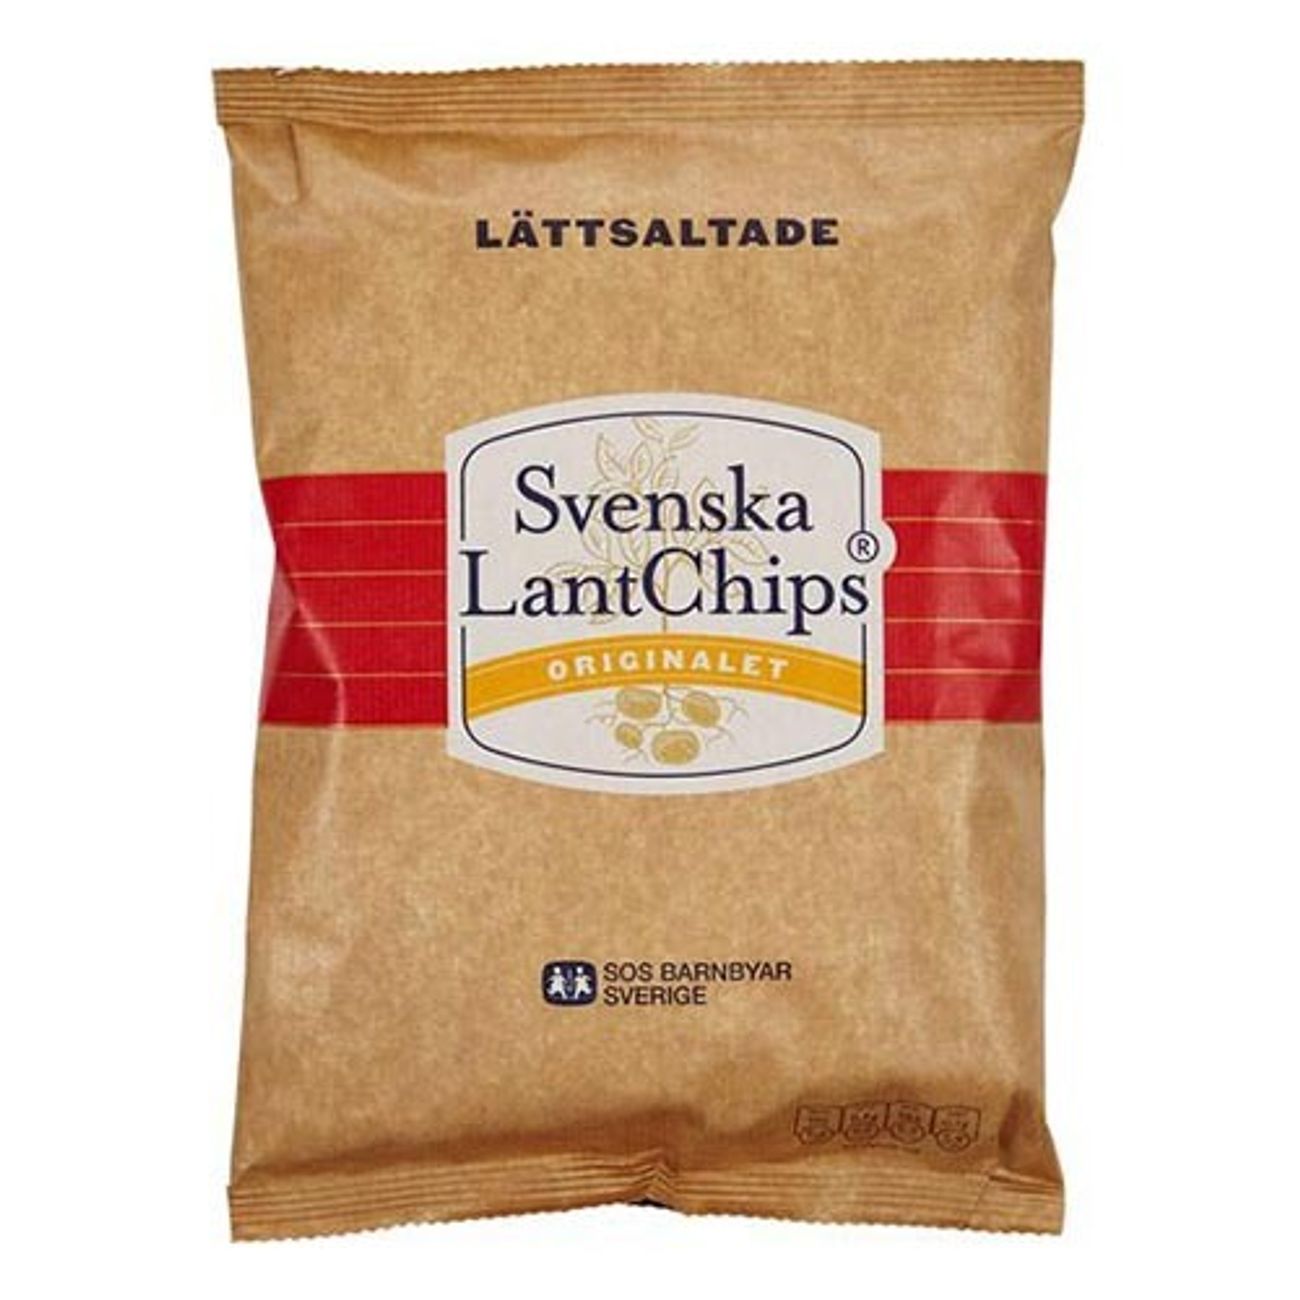 lantchips-lattsaltade-1